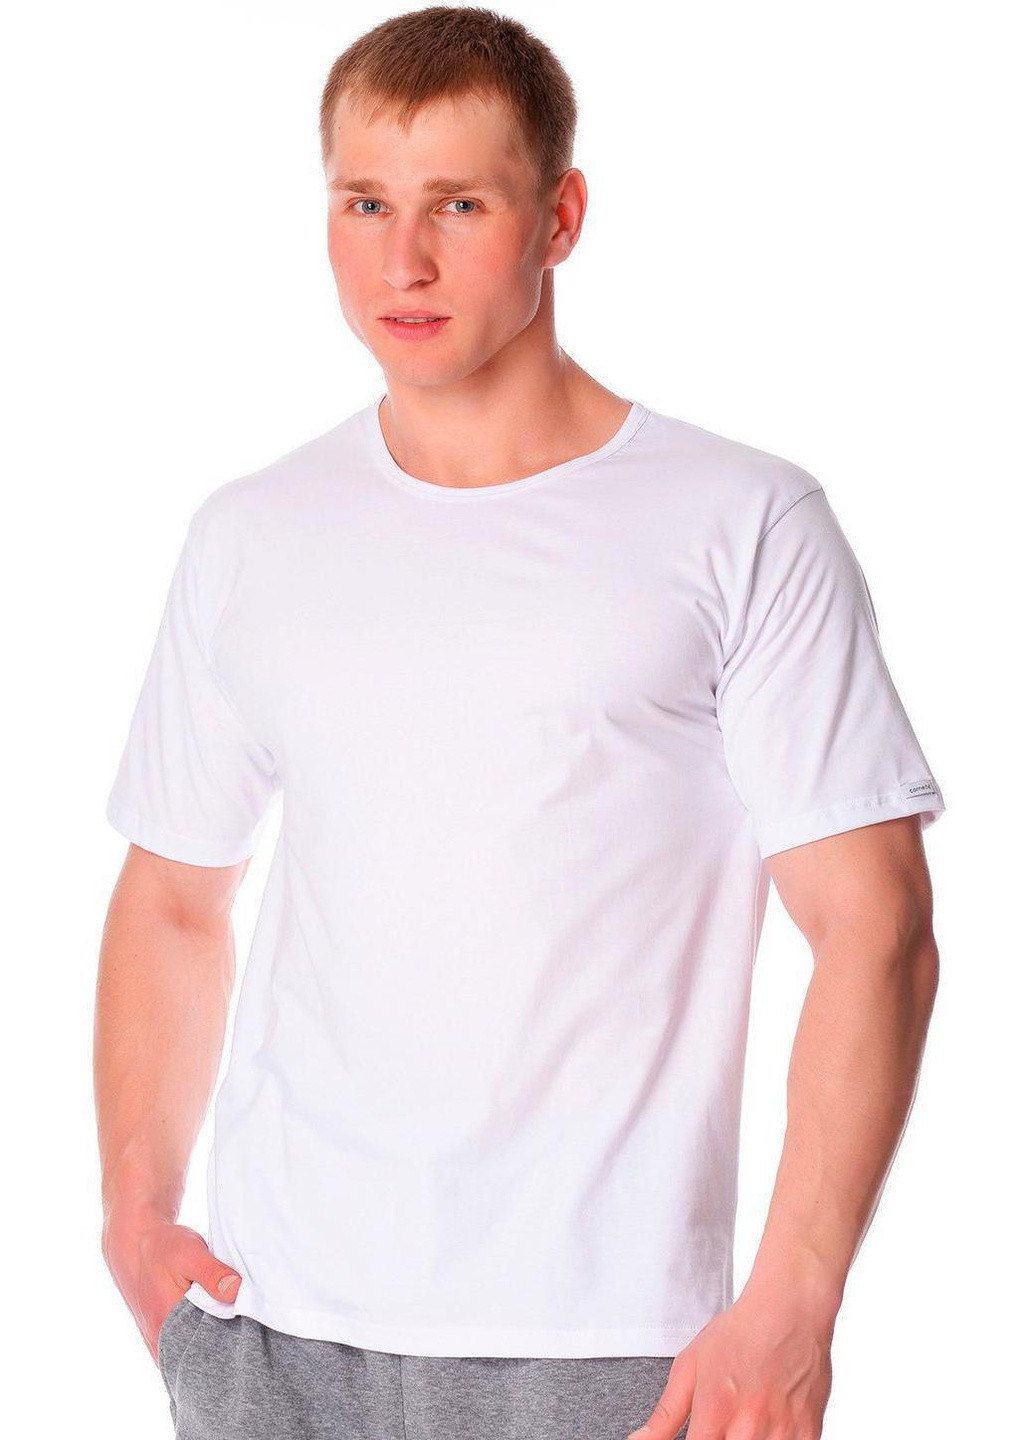 Біла футболка чоловіча new білий 202 Cornette